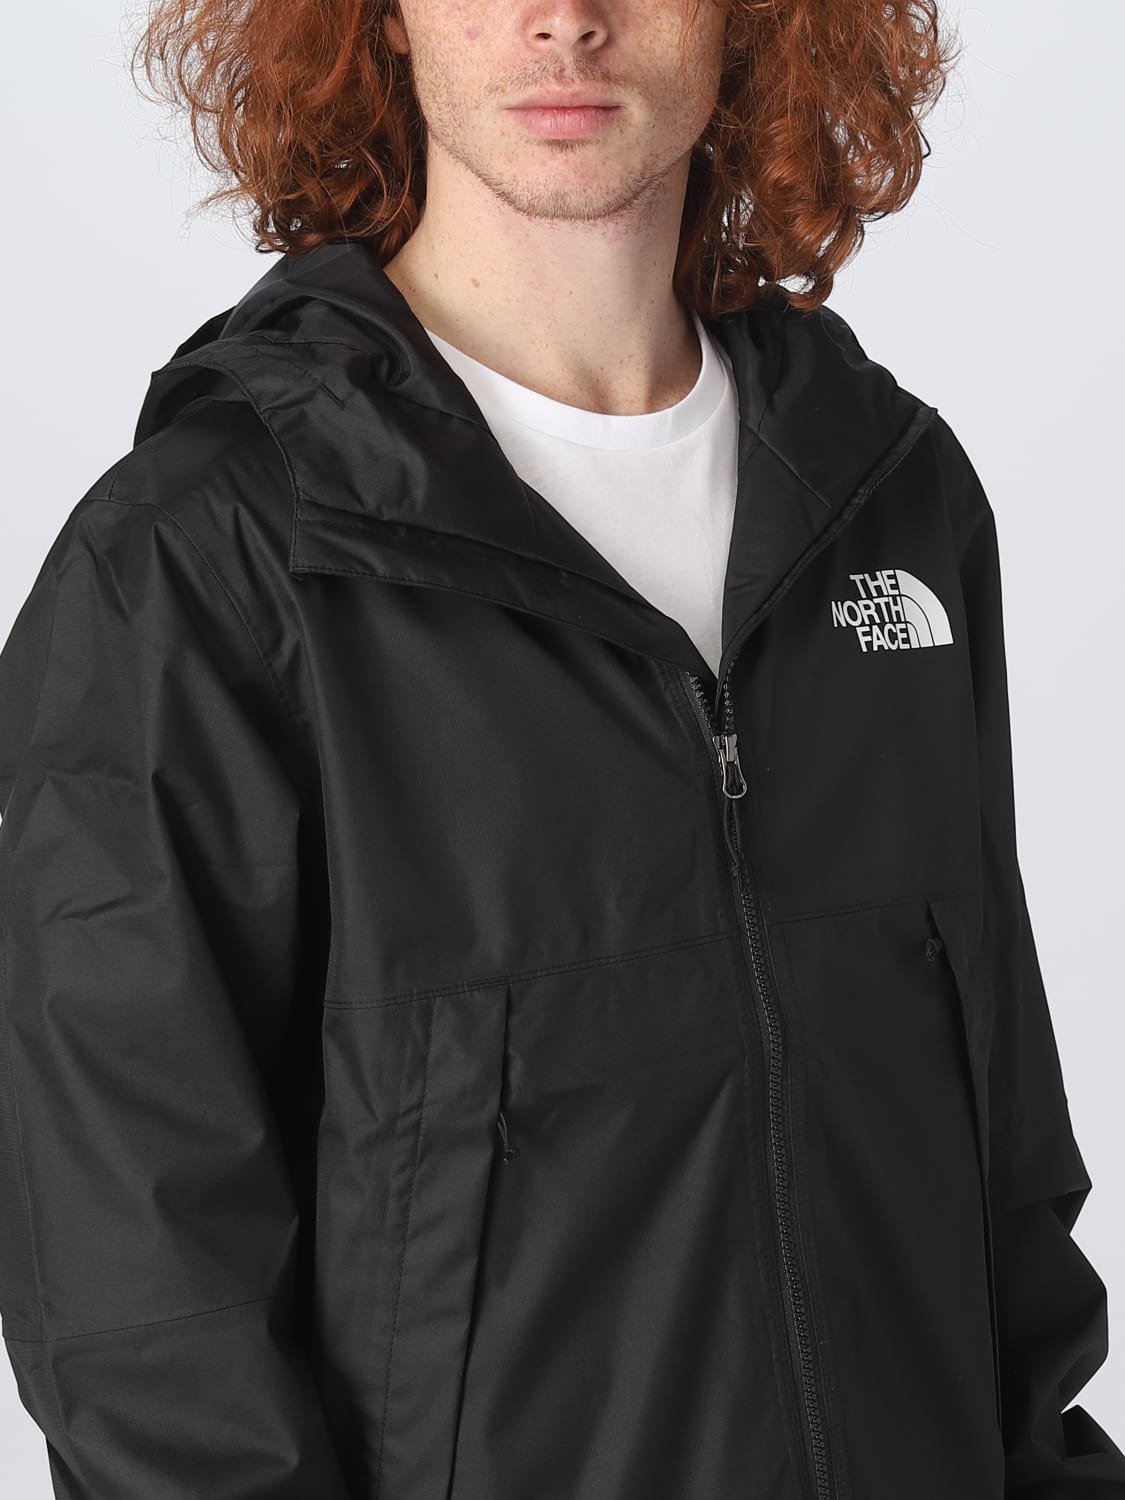 Raad eens maagd haalbaar THE NORTH FACE: jacket for man - Black | The North Face jacket NF0A5IG2  online on GIGLIO.COM